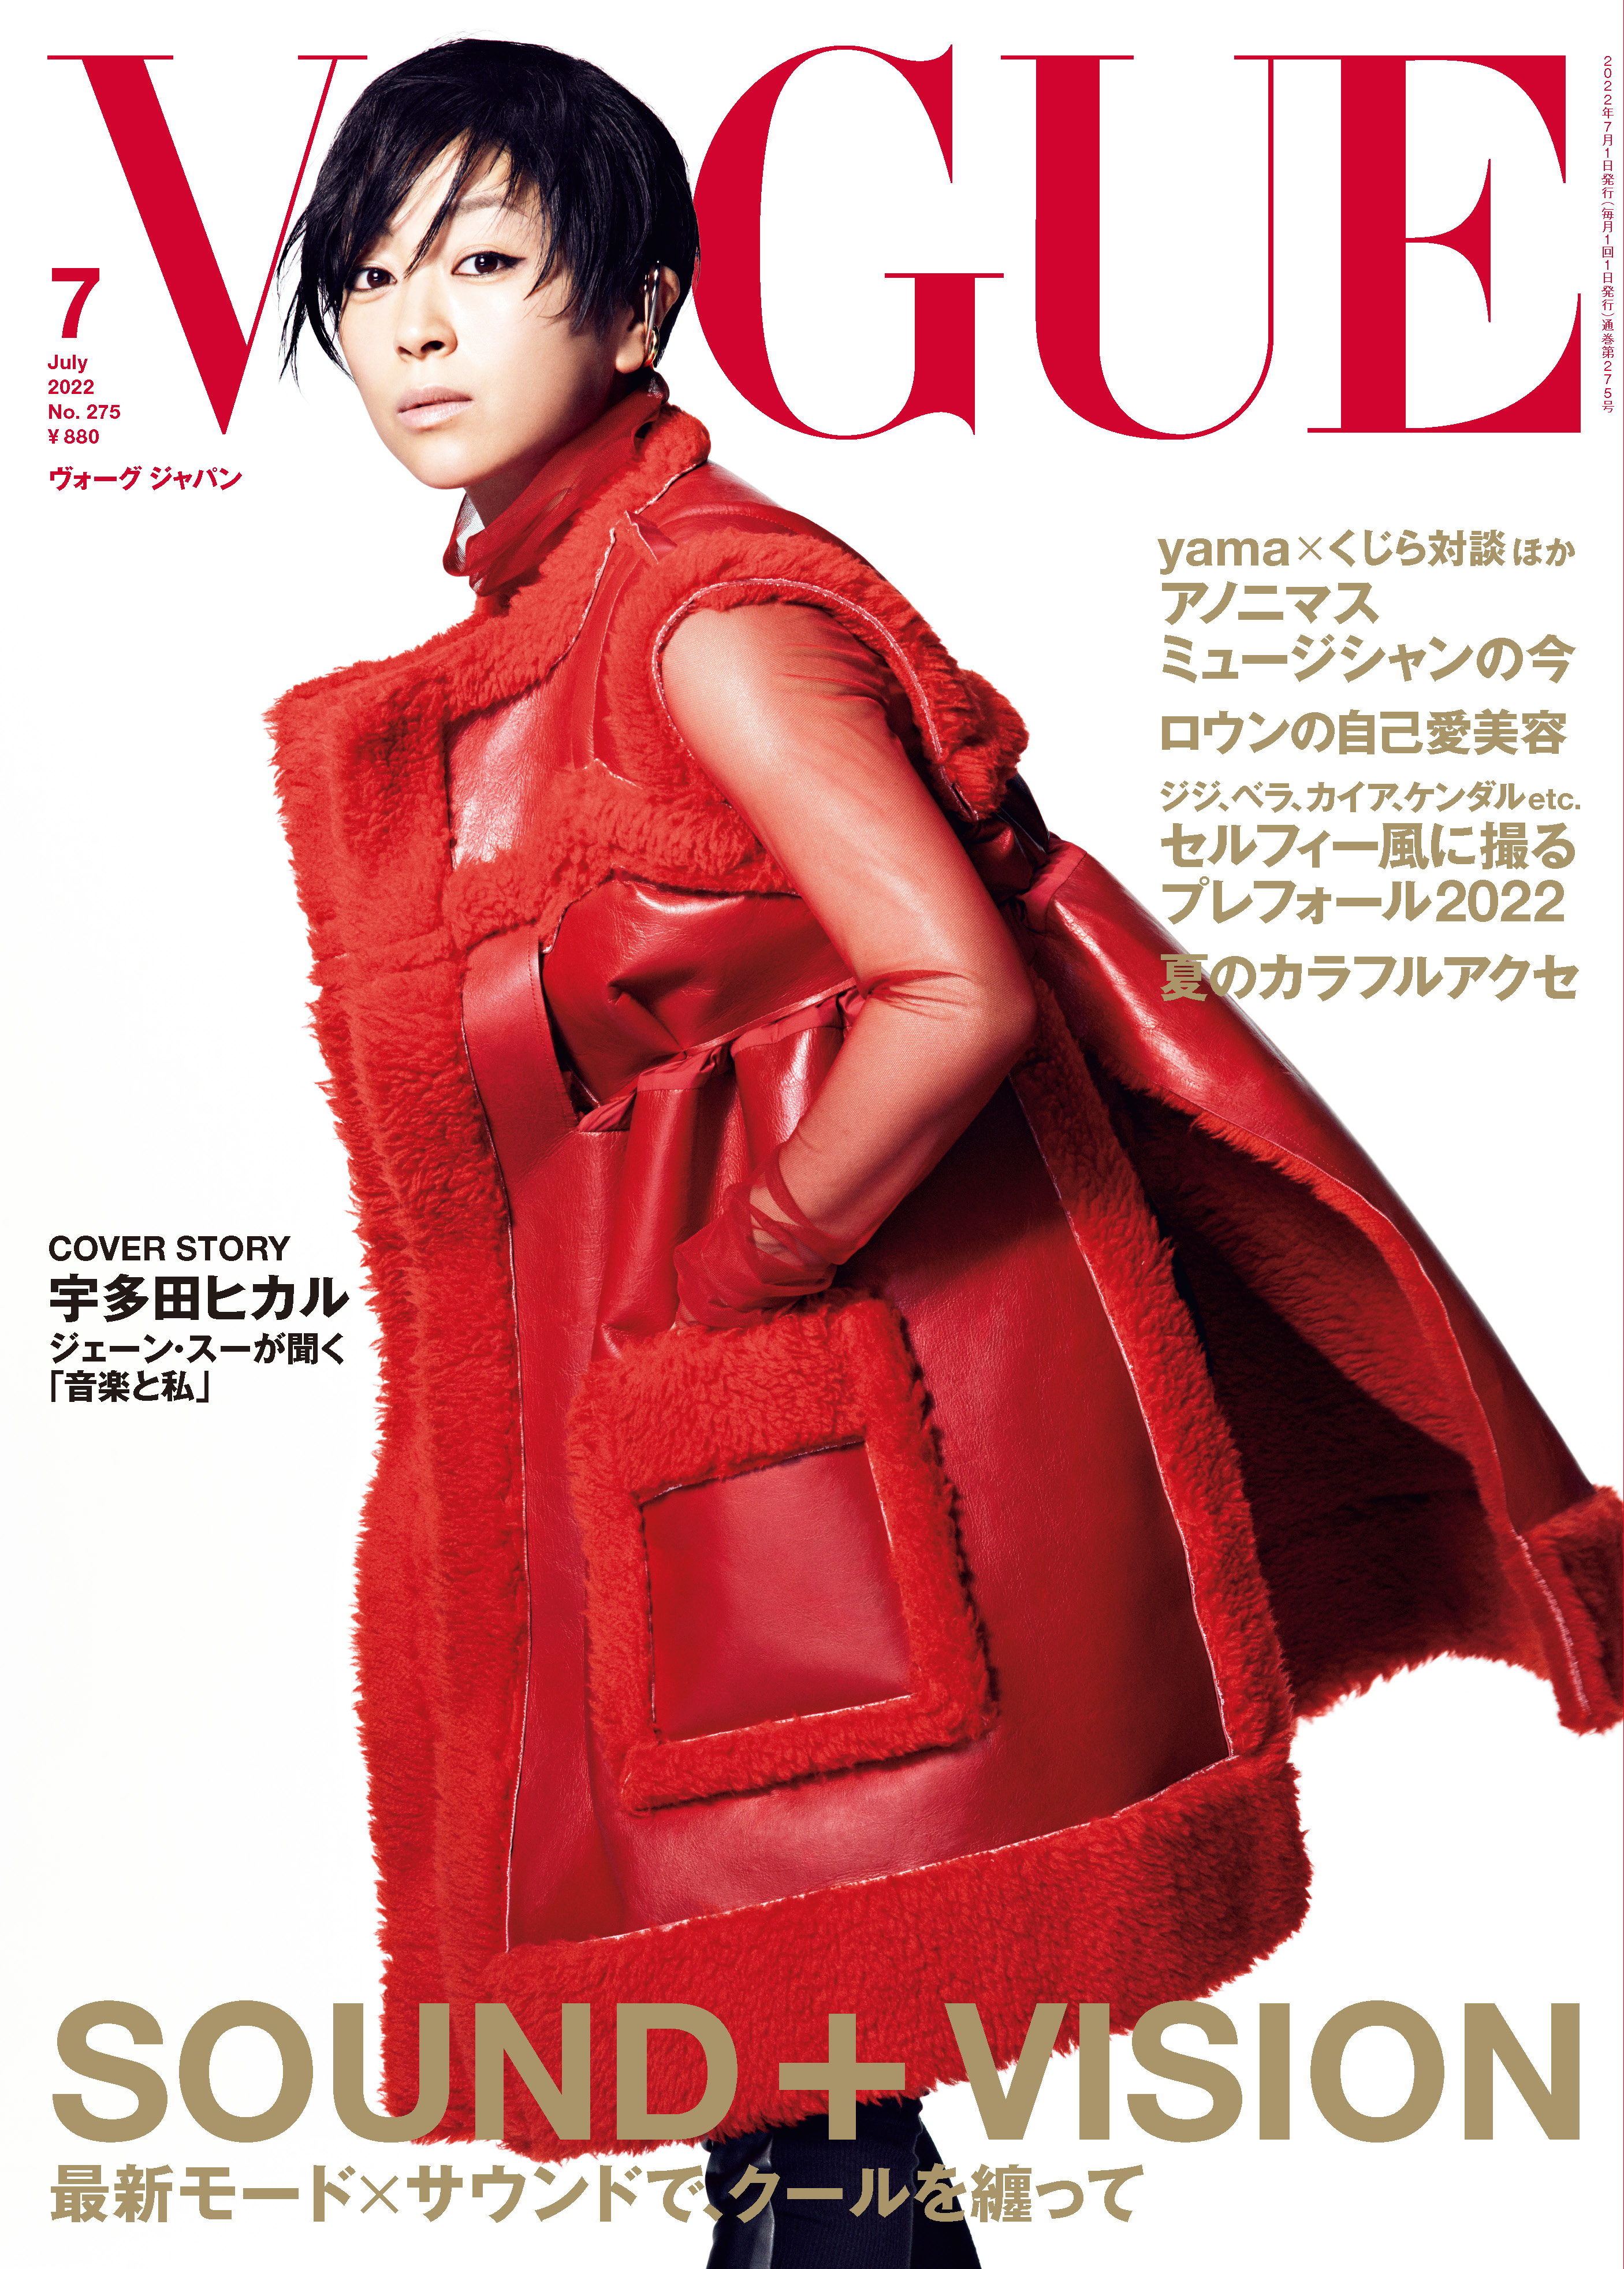 宇多田ヒカルが表紙に初登場 今の私 に至るまでを語る Vogue Japan 7月号 6月1日発売 Sound Vision 最新モード サウンドで クールを纏って コンデナスト ジャパンのプレスリリース